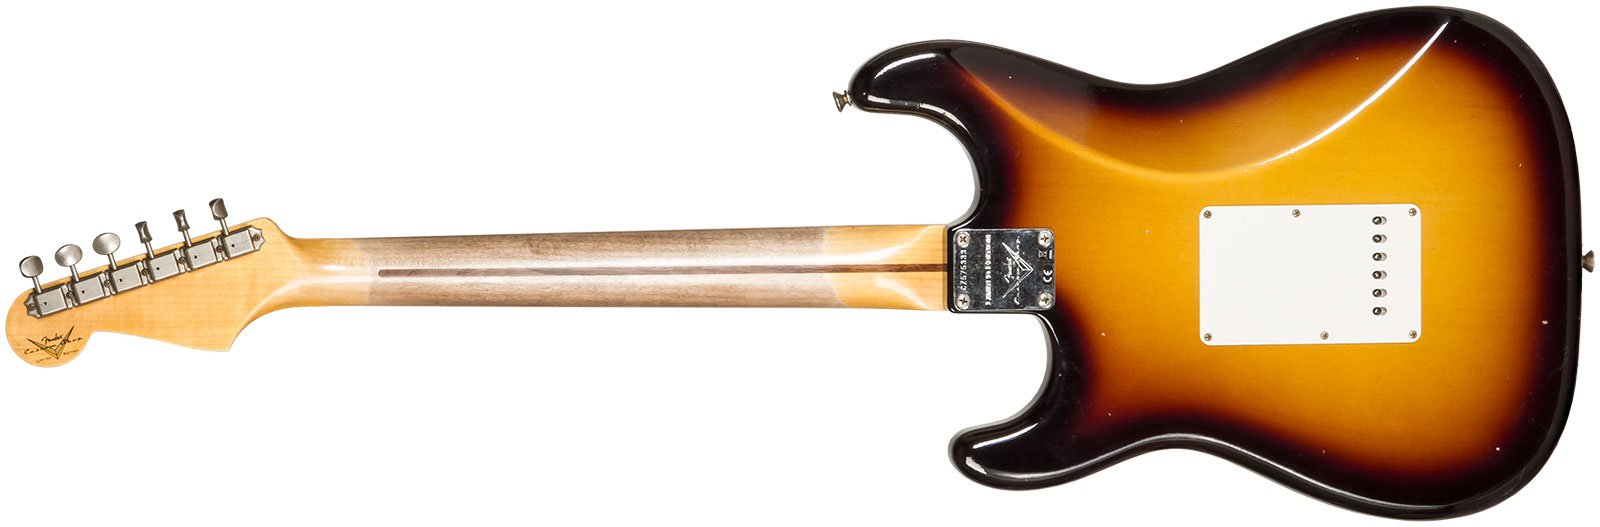 Fender Custom Shop Strat 1956 3s Trem Mn #cz575333 - Journeyman Relic 2-color Sunburst - Str shape electric guitar - Variation 1